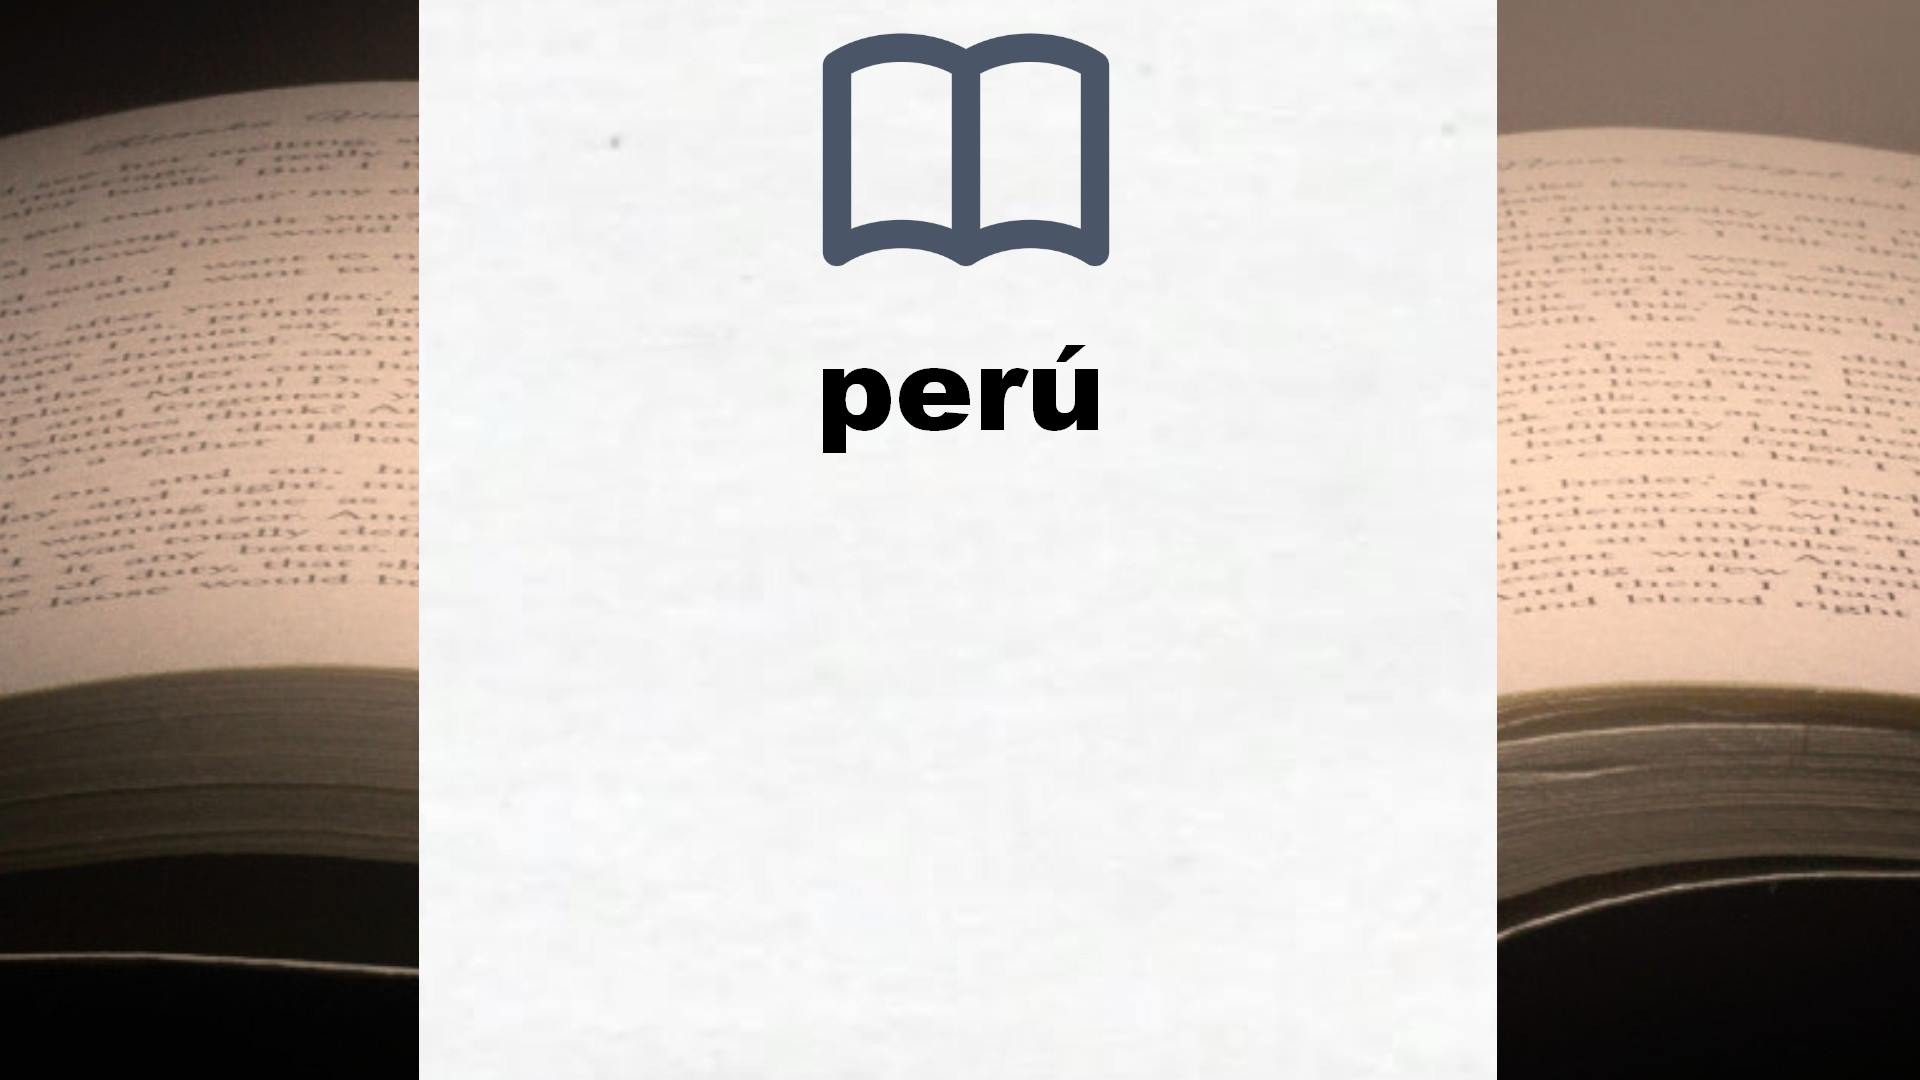 Libros sobre perú